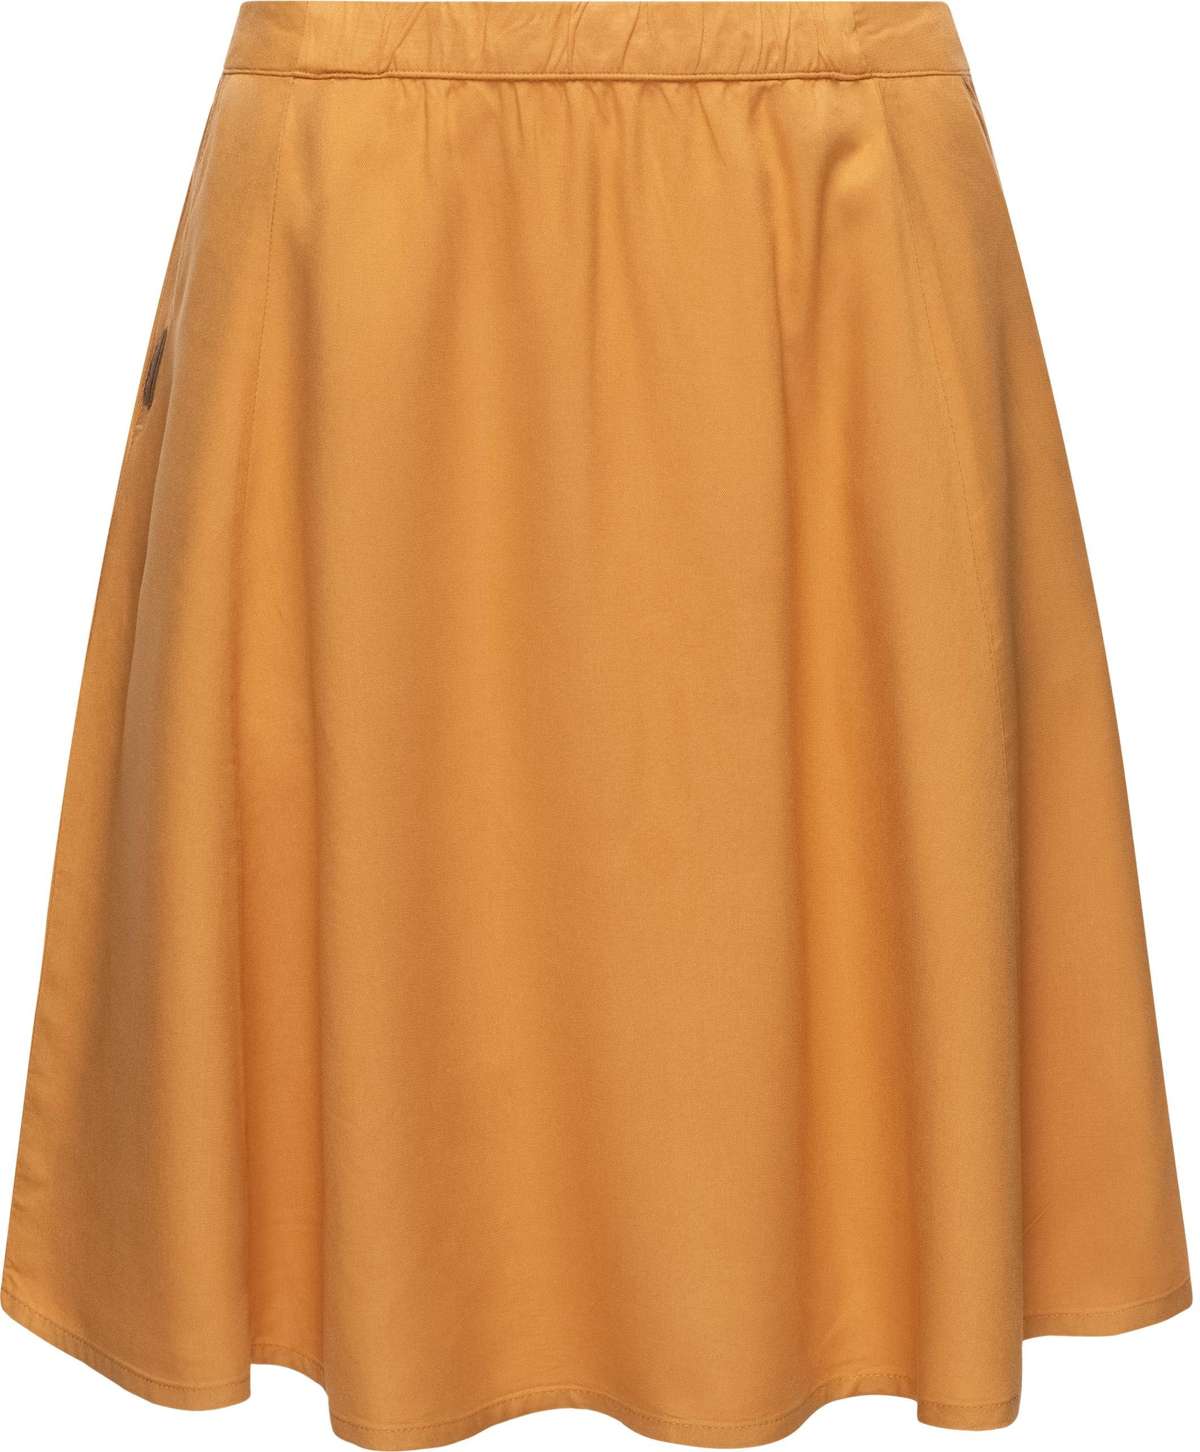 Юбка из джерси Shayen стильная женская летняя юбка